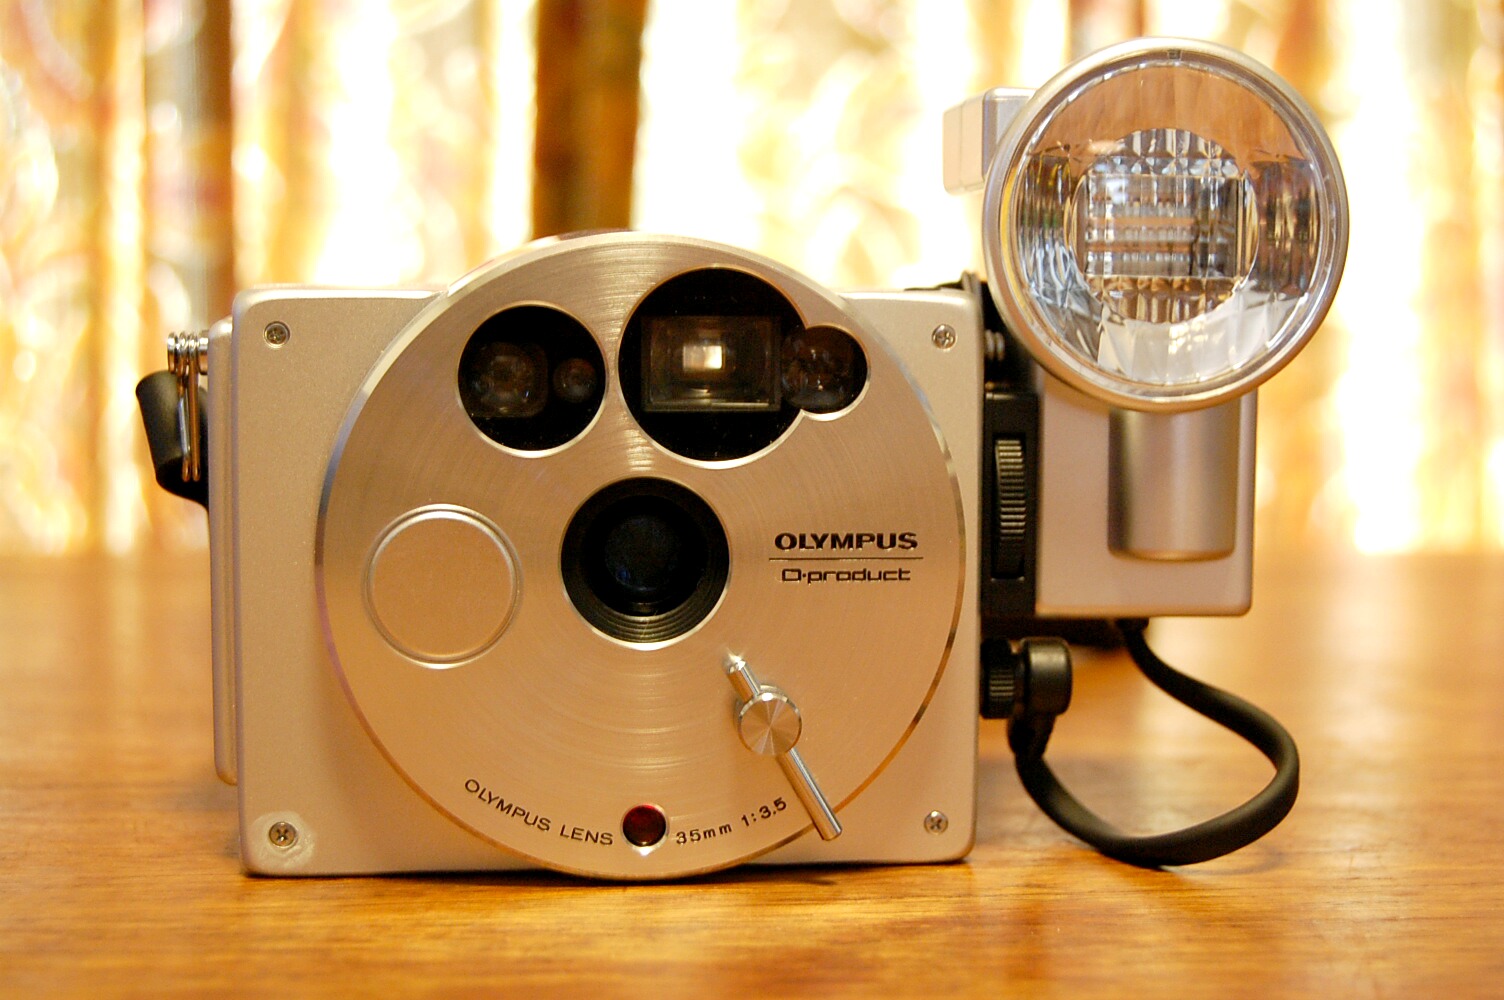 OLYMPUS O･product (世界限定20,000台)フィルムカメラ